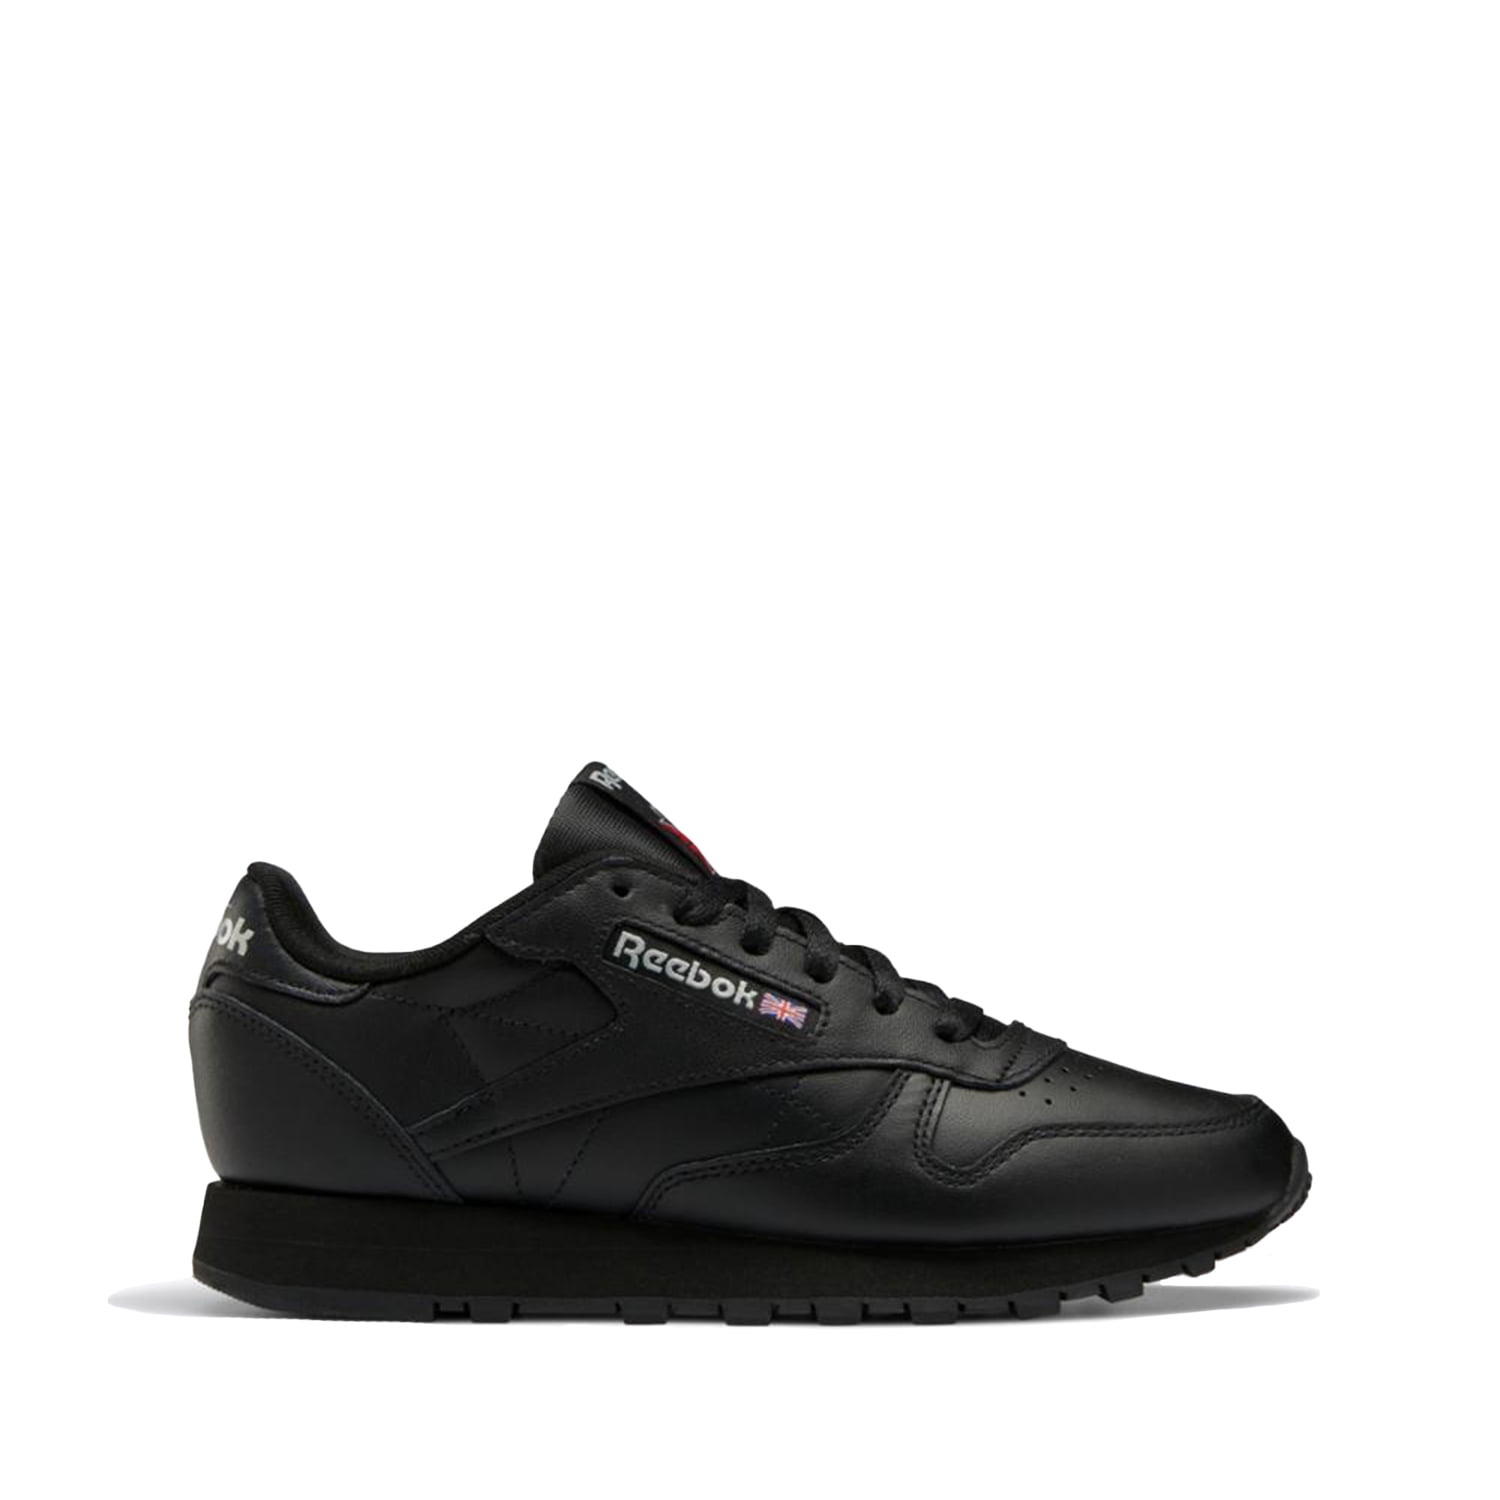 Reebok Footwear Gy0960 Ftw Women Black , 6 M US - Walmart.com